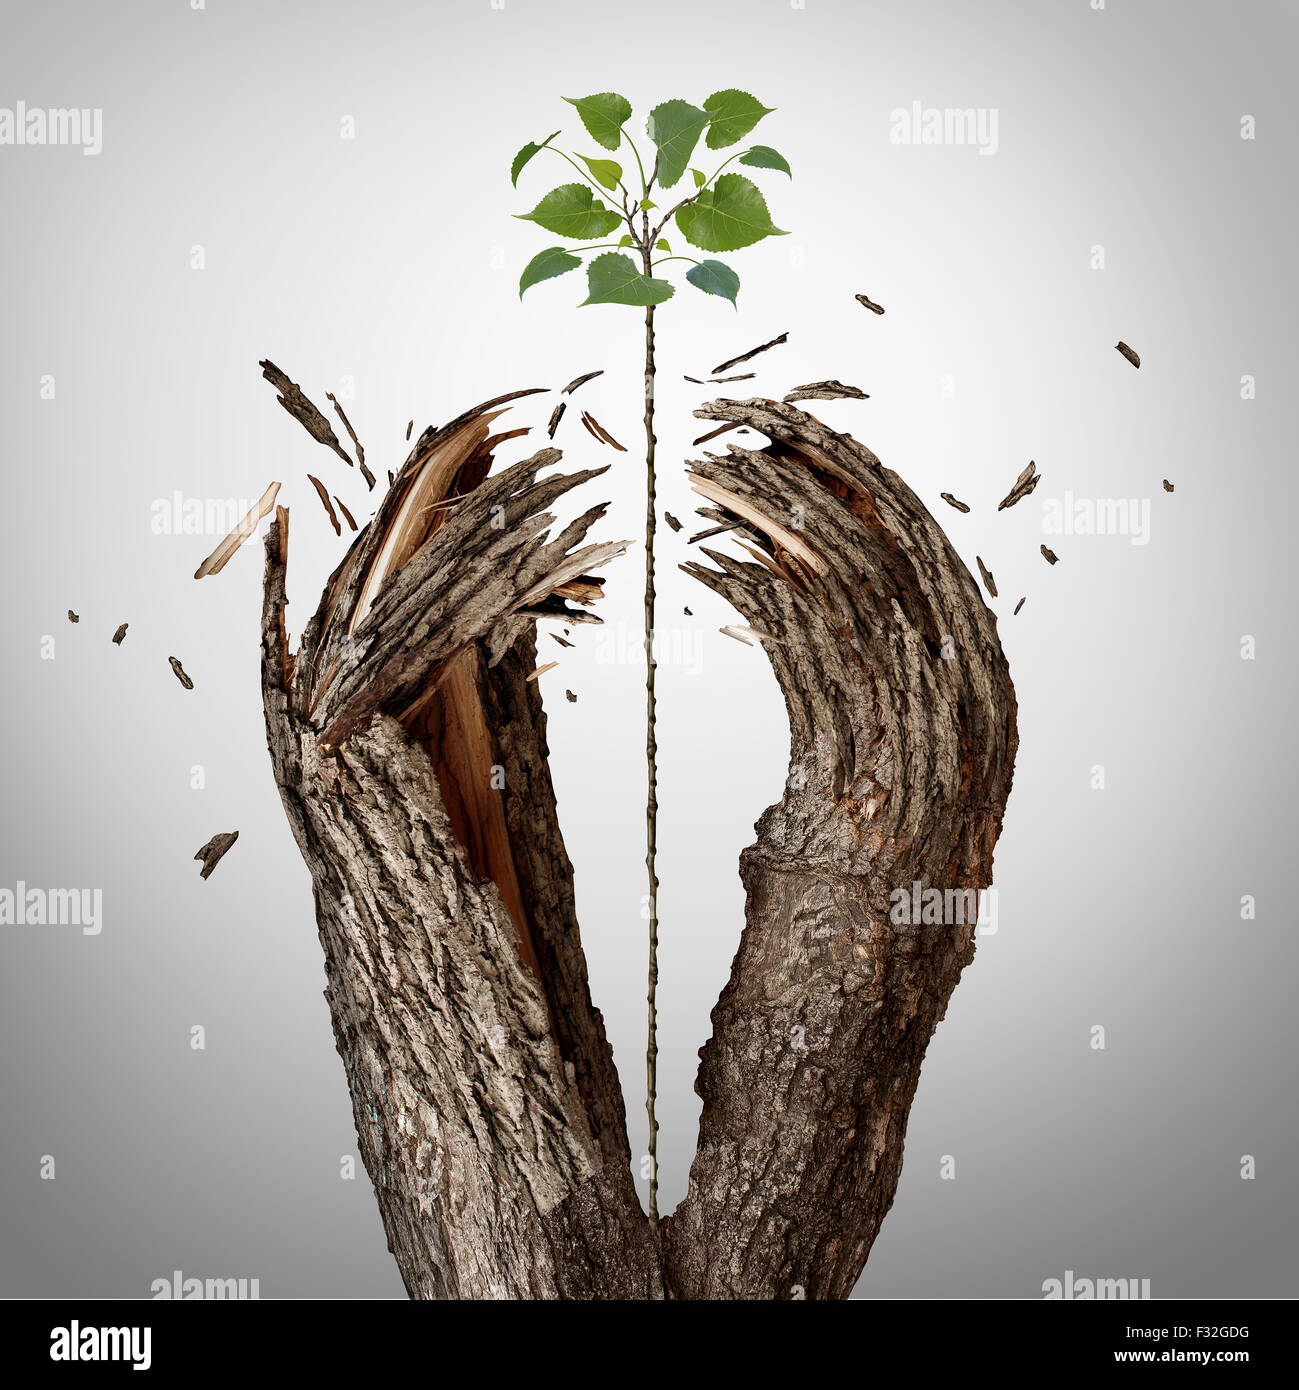 La rottura attraverso il concetto come un alberello verde crescente verso l'alto e distruggendo una barriera ad albero come un business di successo metafora per il potenziale di ambizione e di forte volontà di riuscire. Foto Stock